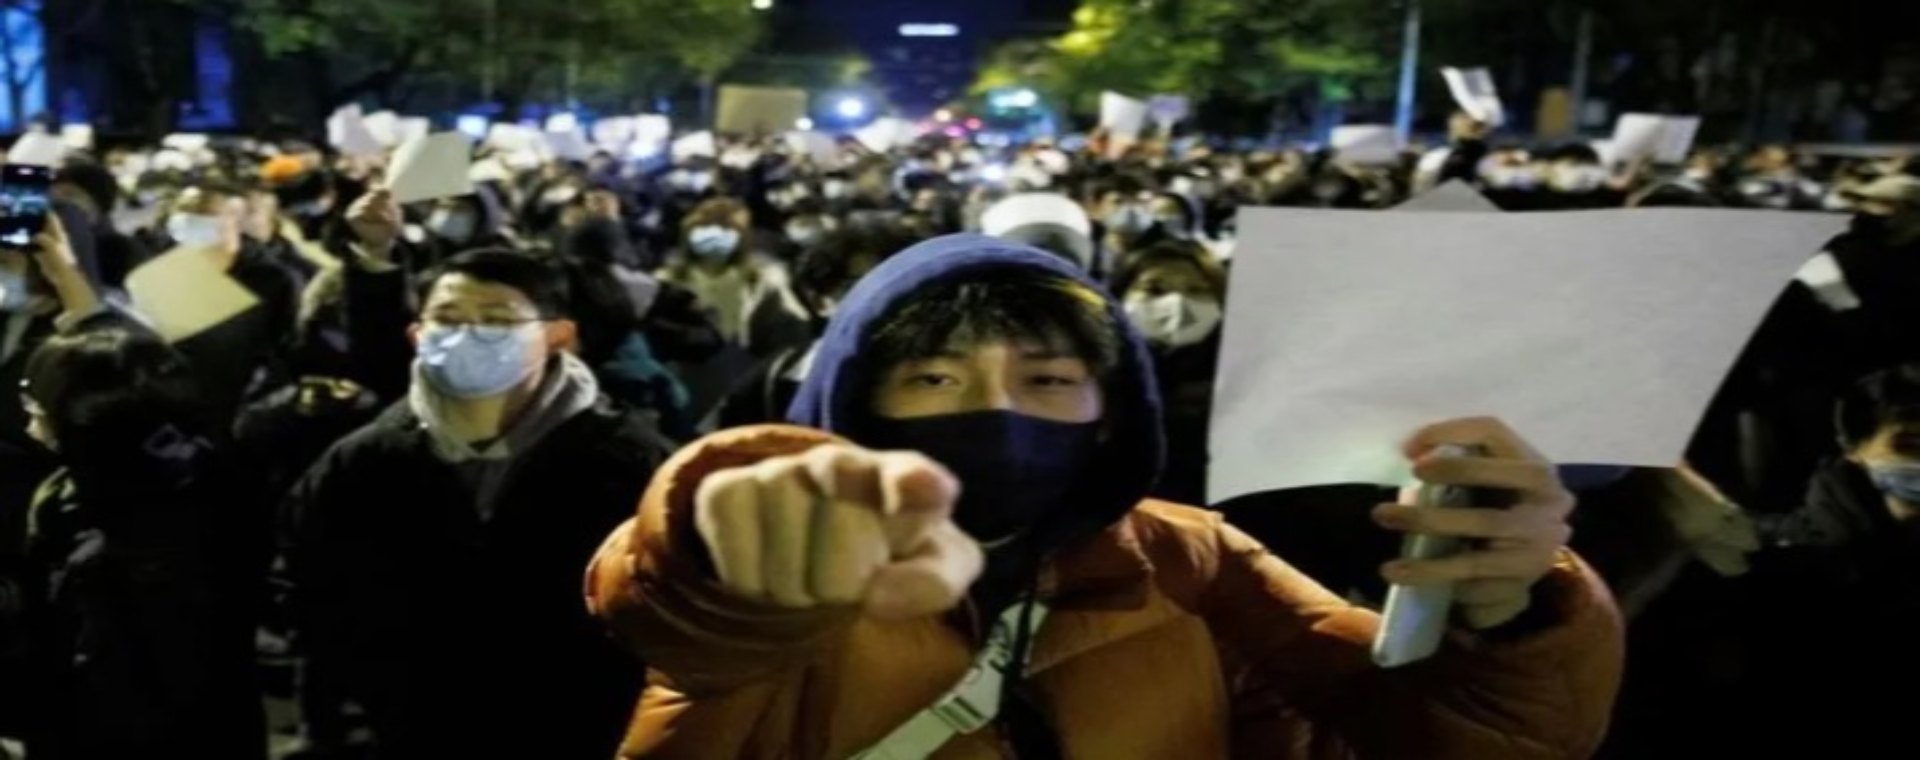 Orang-orang memegang lembaran kertas putih sebagai protes atas pembatasan Covid-19, setelah berjaga bagi para korban kebakaran di Urumqi, di Beijing, China, 27 November 2022. - Antara